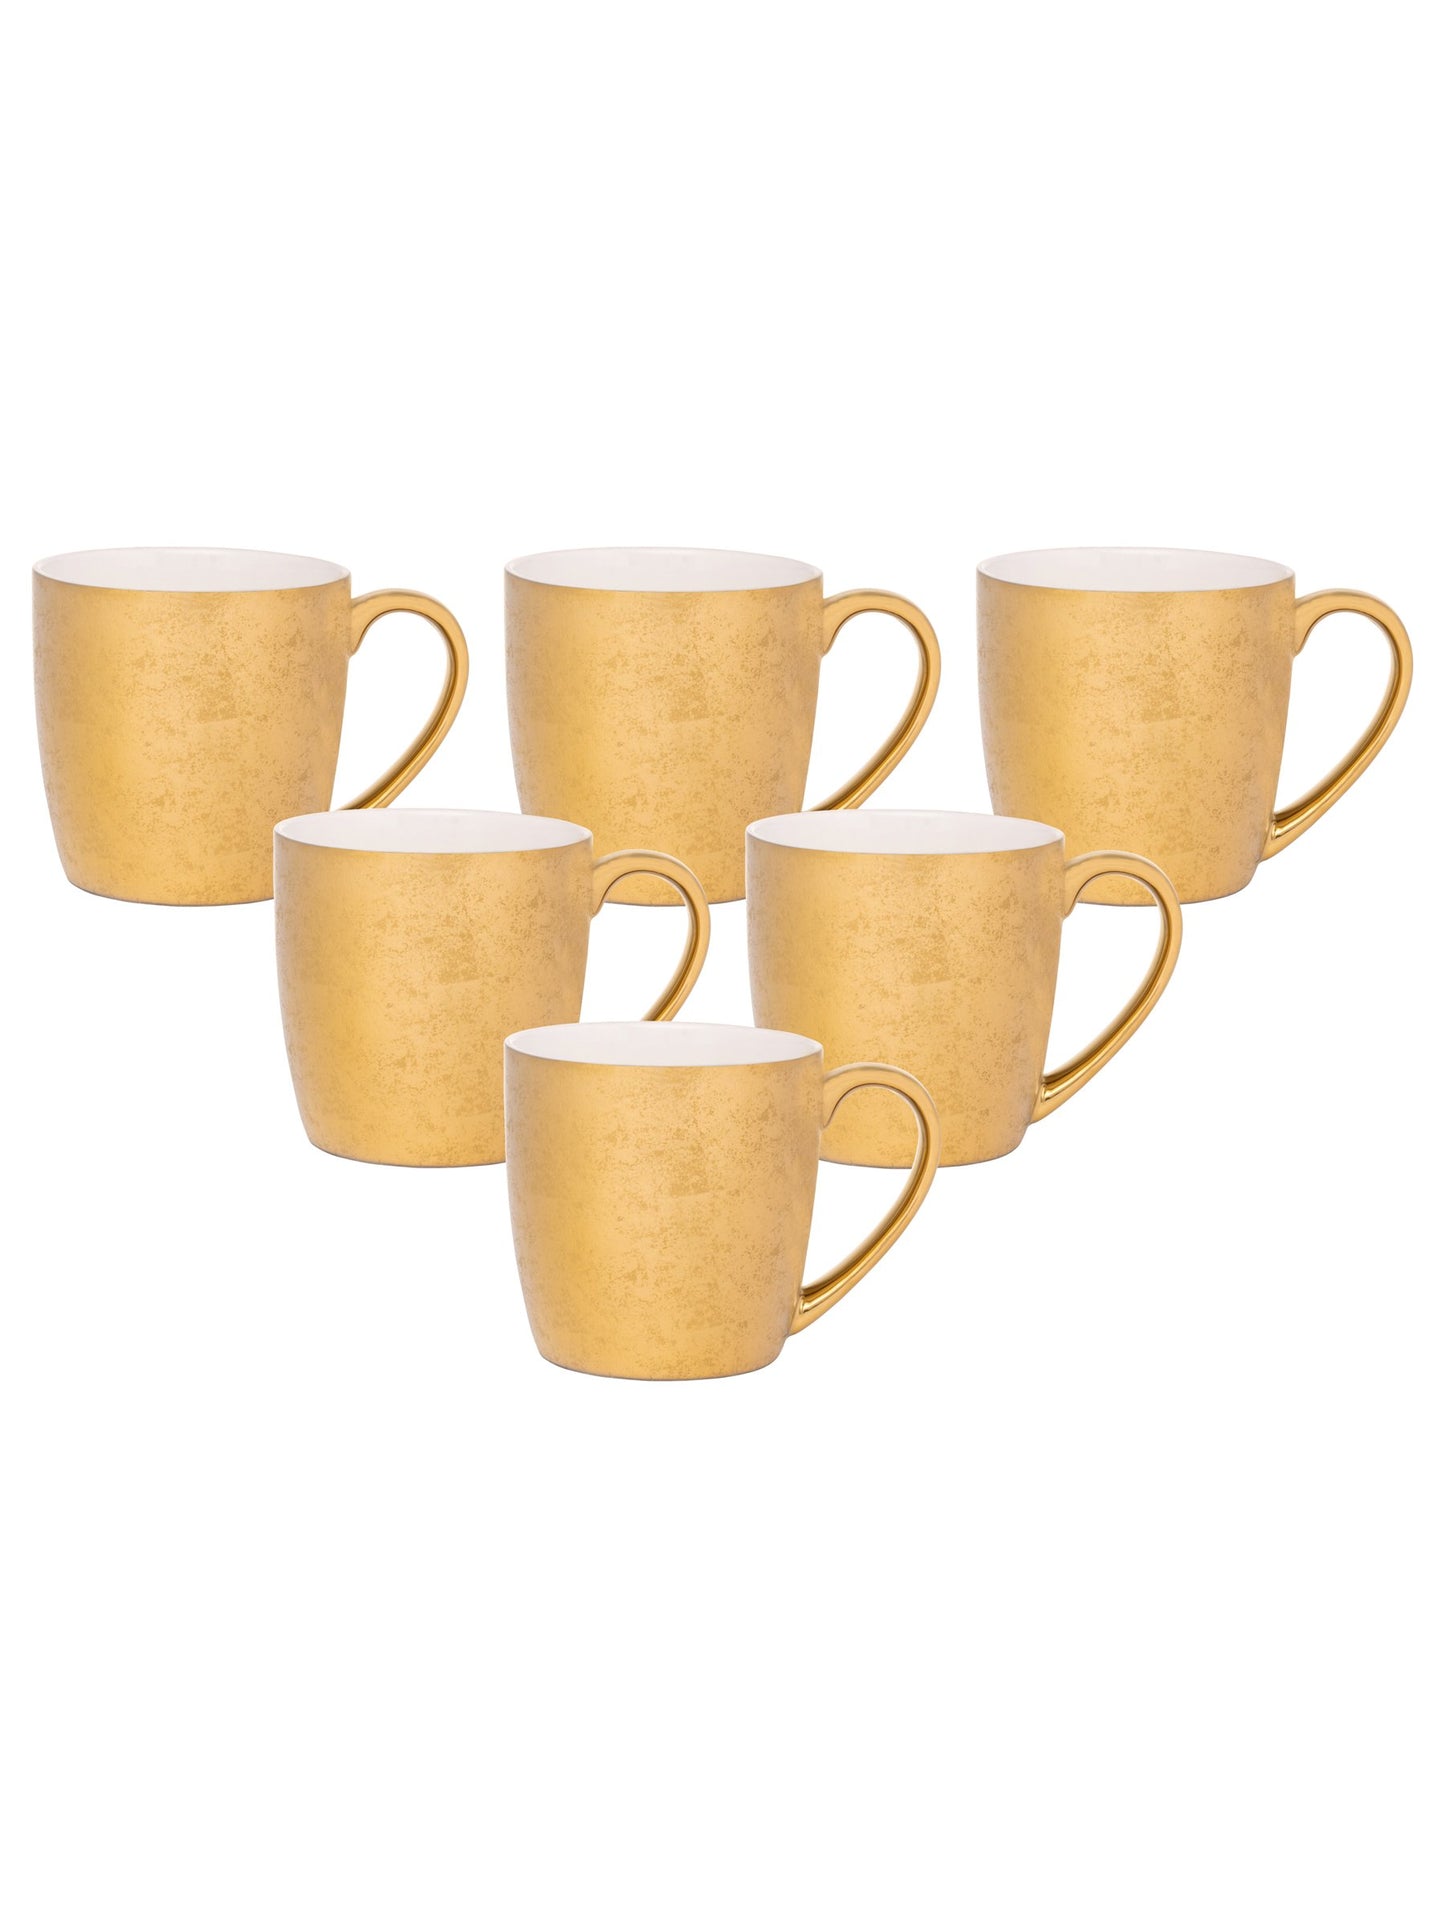 Alton Ebony Coffee & Tea Mugs, 220ml, Set of 6 (E666) - Clay Craft India